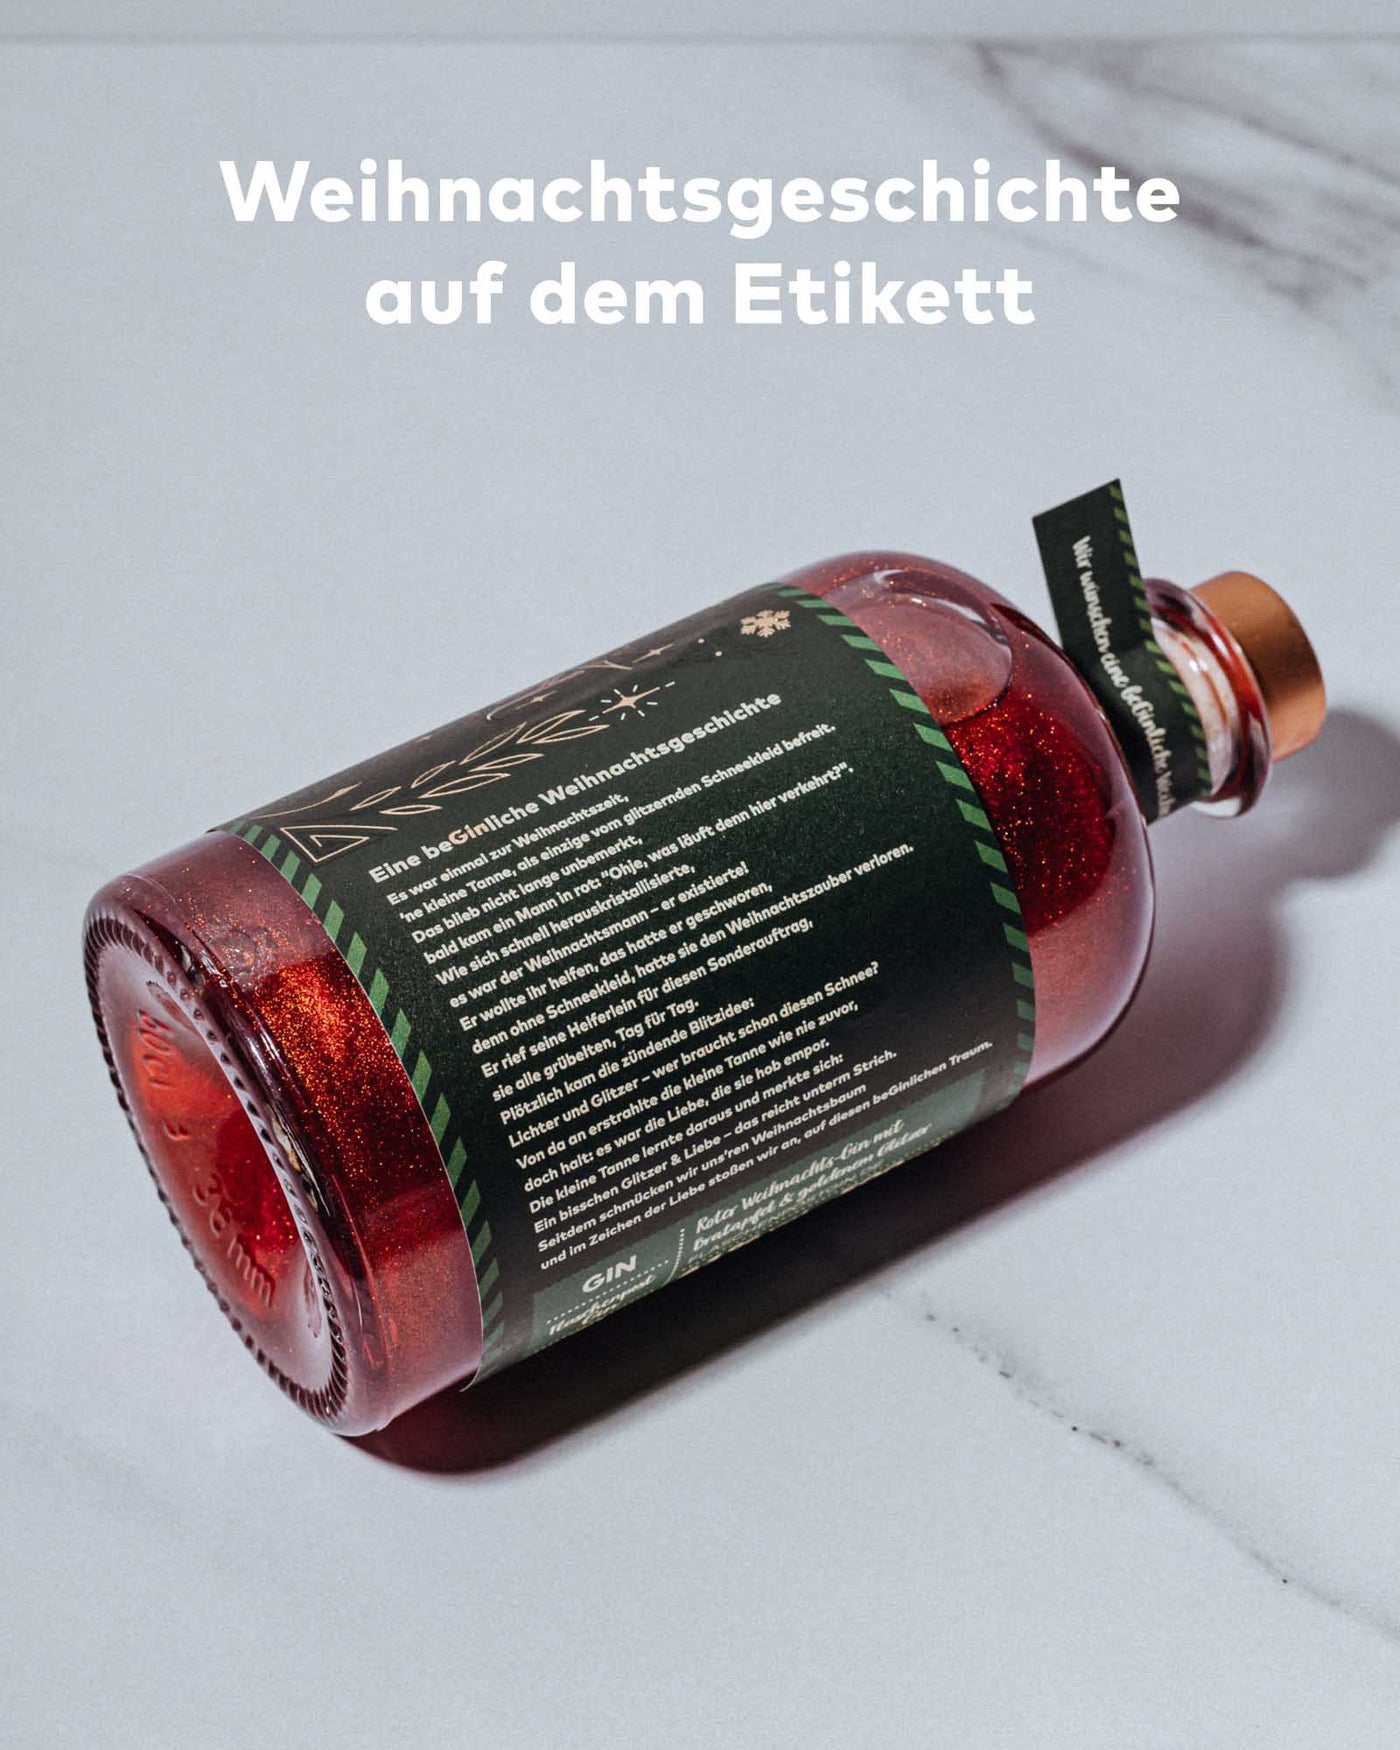 BeGinliche Weihnachten by Flaschenpost Gin - Limited Xmas Edition - Bratapfel Gin & Glitzer (2023) - Ausverkauft